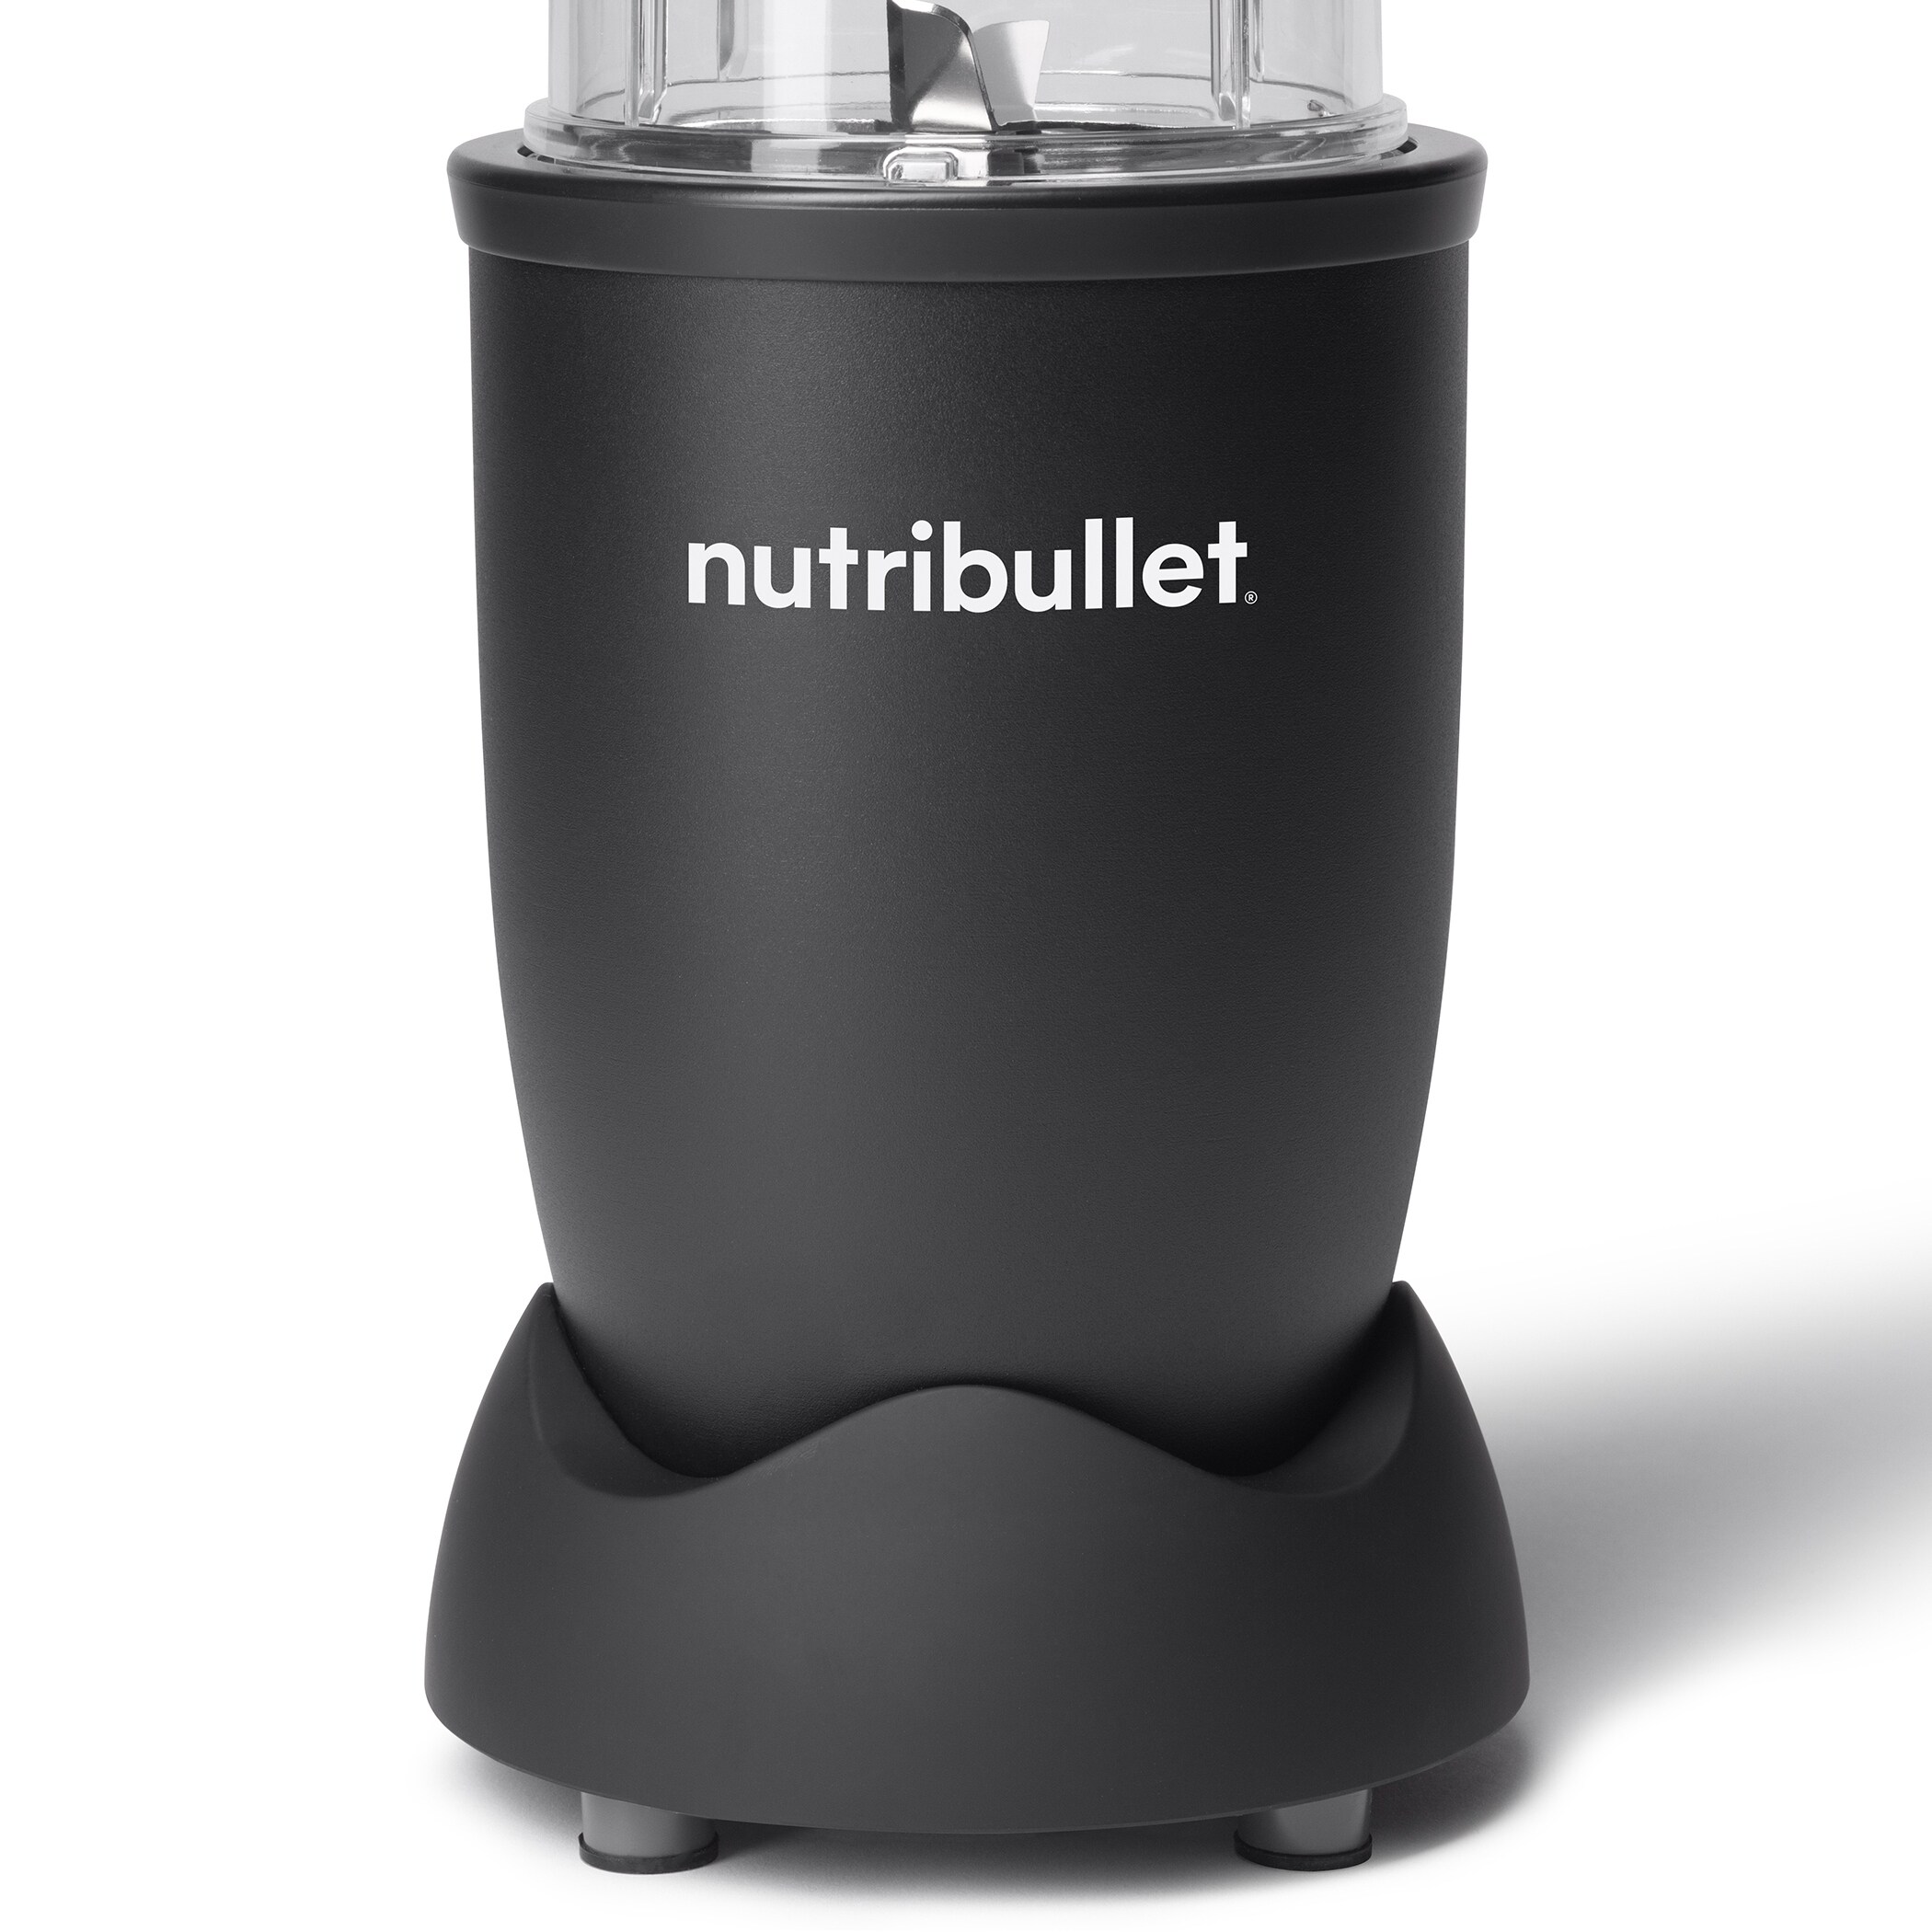 Nutribullet Pro Single Serve Blender, White